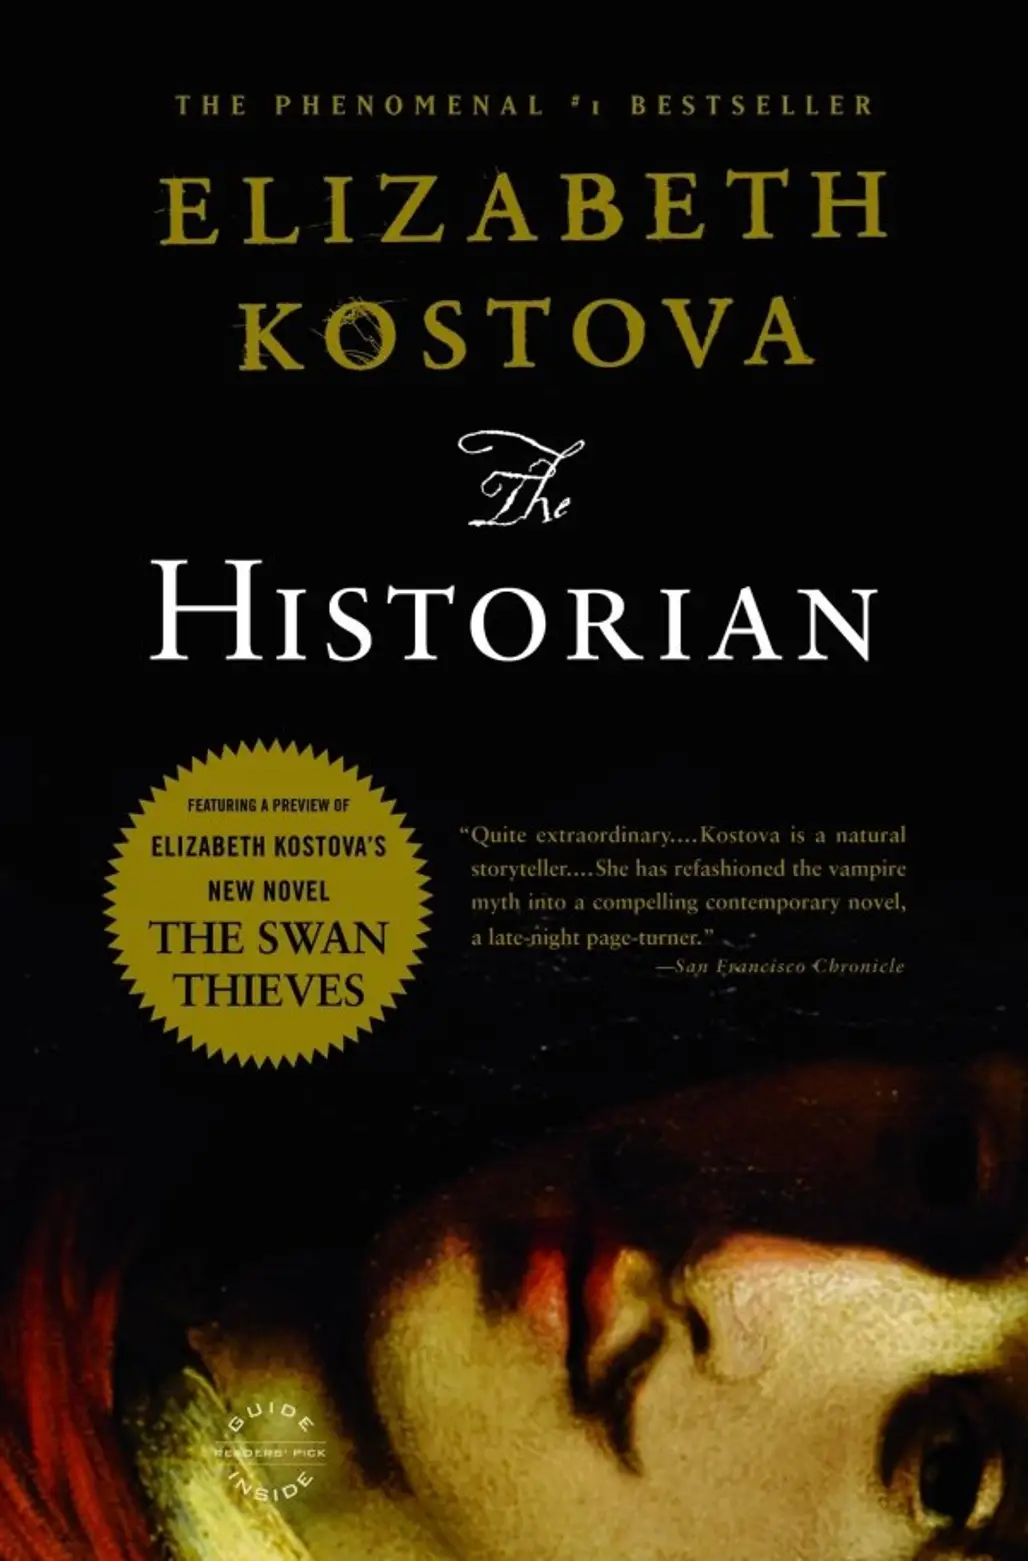 The Historian, by Elizabeth Kostova